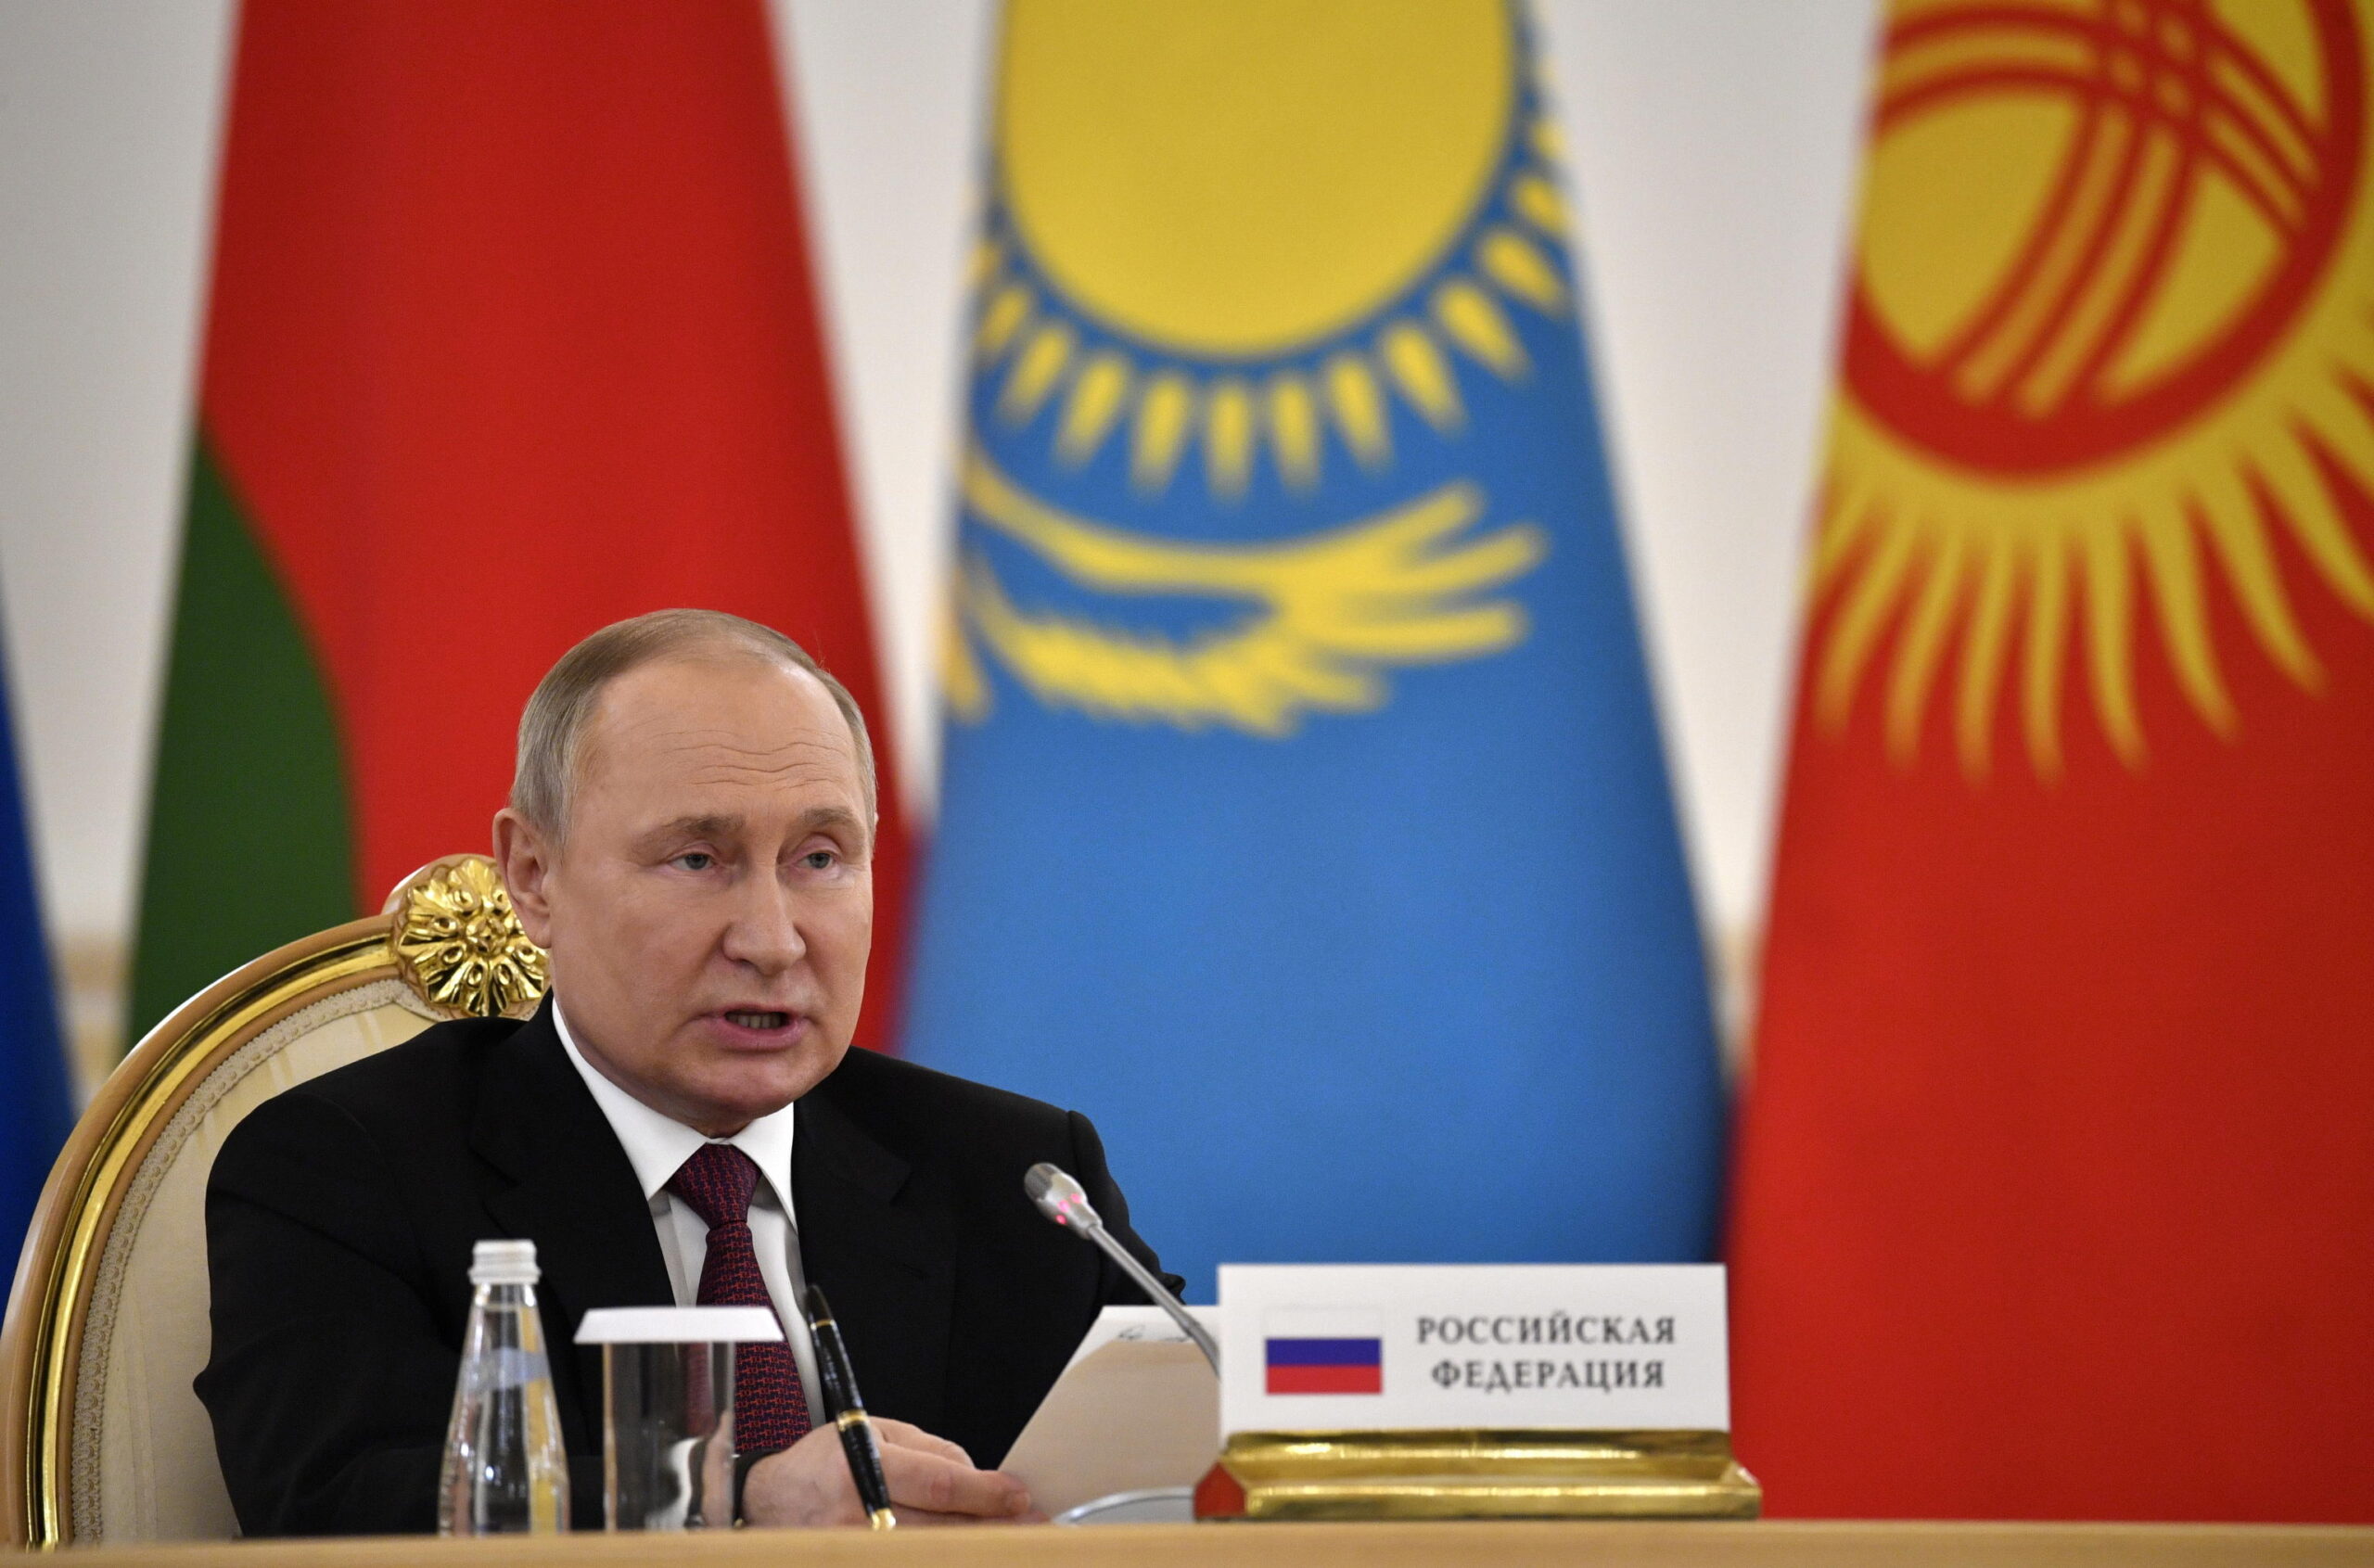 Crisi energetica, Putin: “contro l’Occidente”